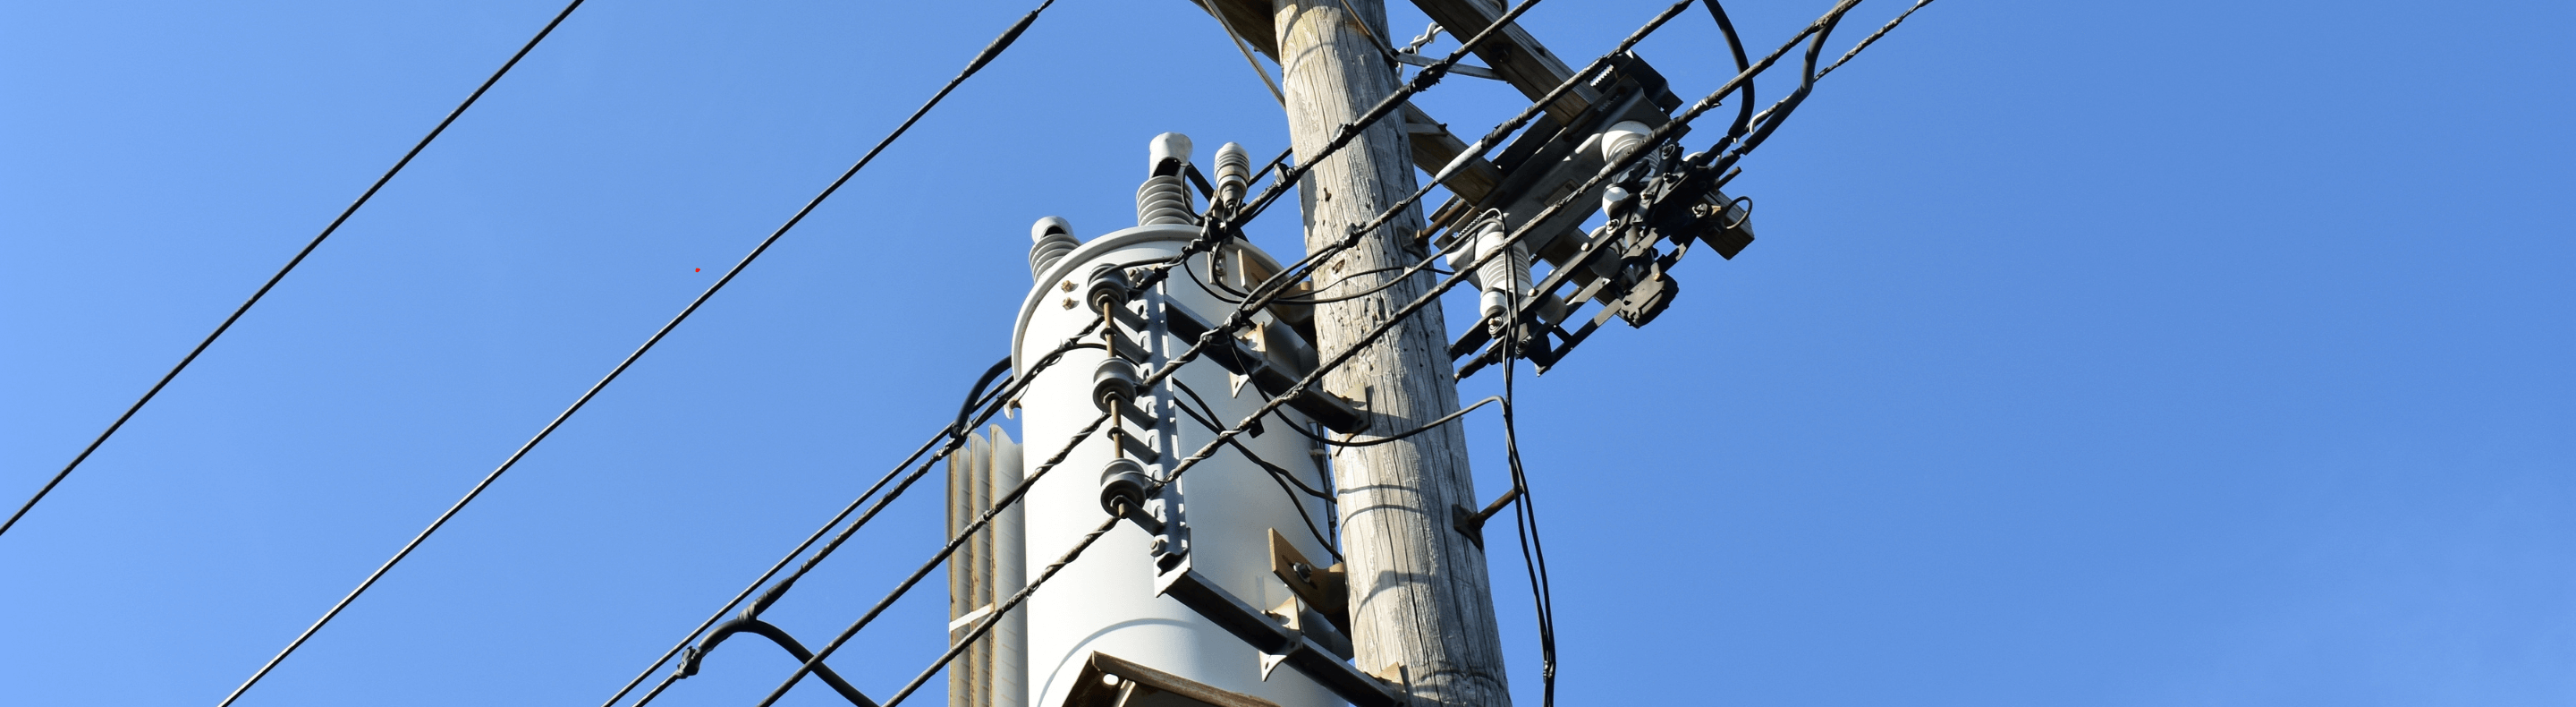 Rede de energia elétrica